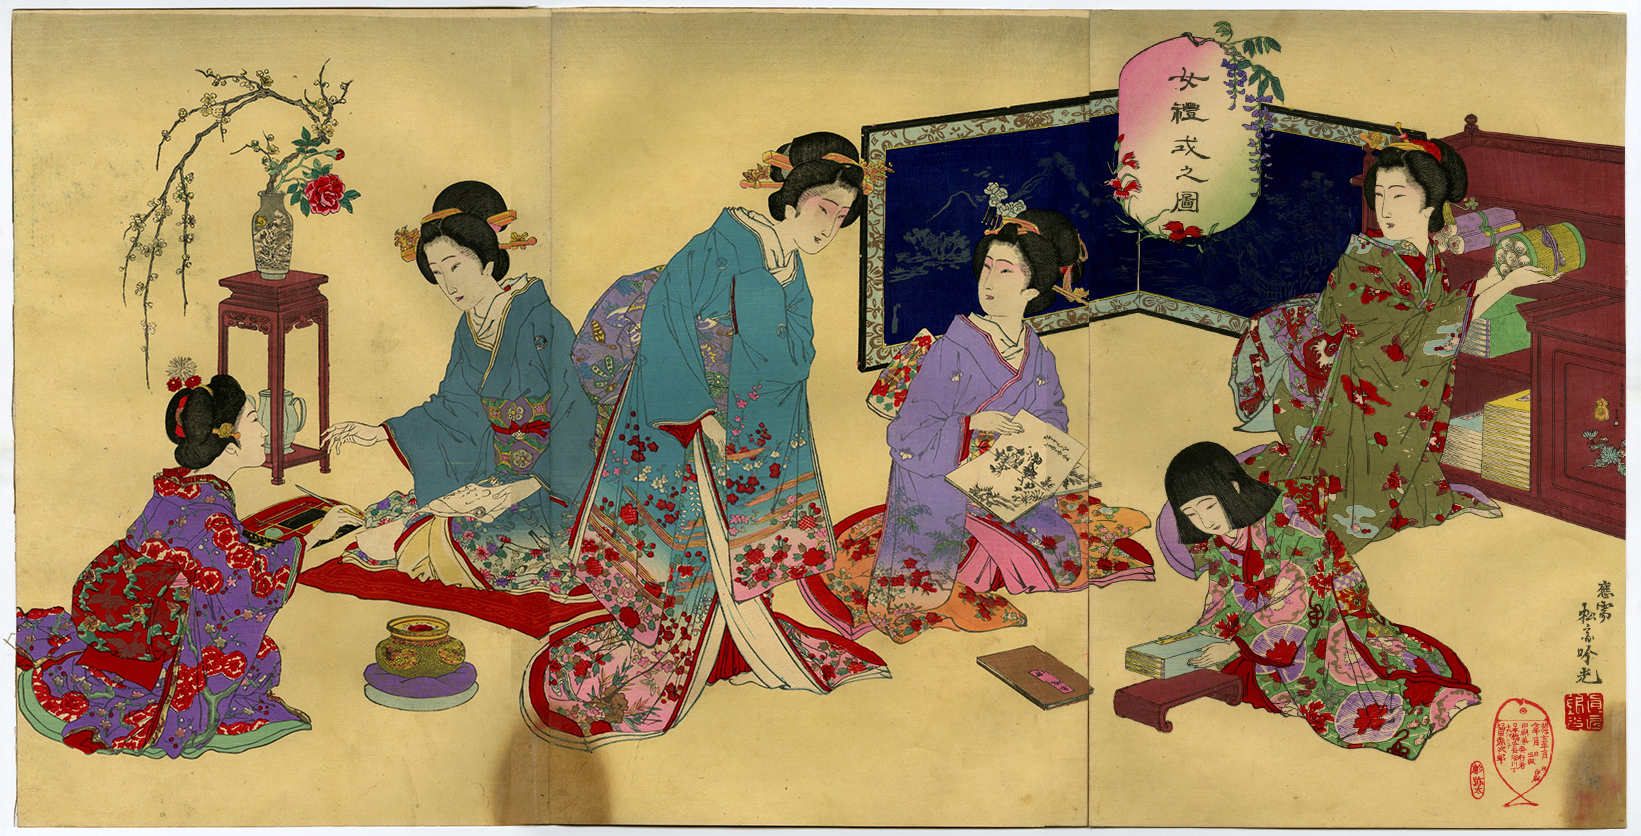 安達吟光(あだちぎんこう) - 女礼式之図 - 浮世絵販売 - 浮世絵